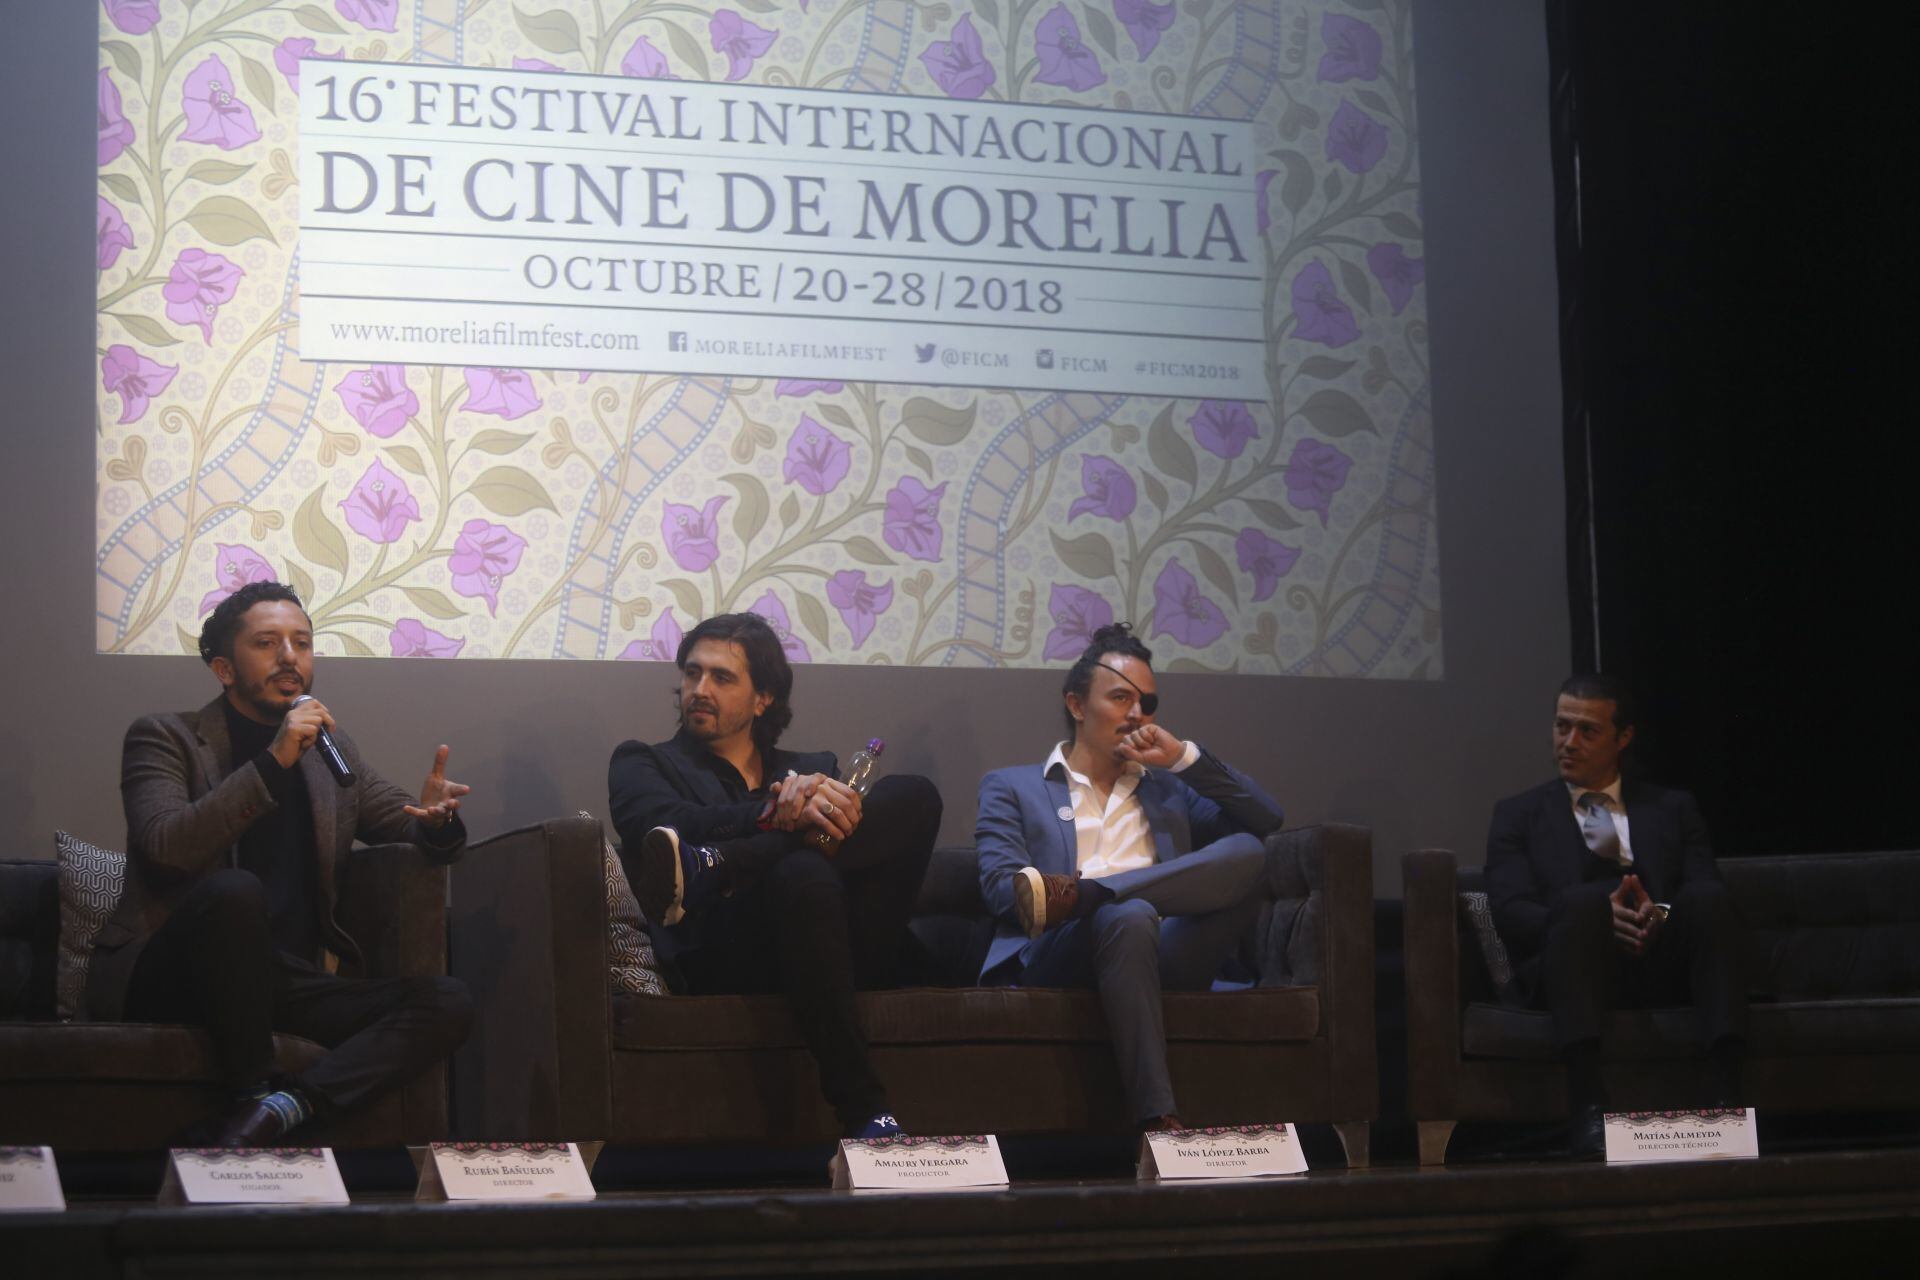 Amaury Vergara, directivos y jugadores de Chivas en rueda de prensa después la proyección de su documental en el Festival Internacional de Cine de Morelia.